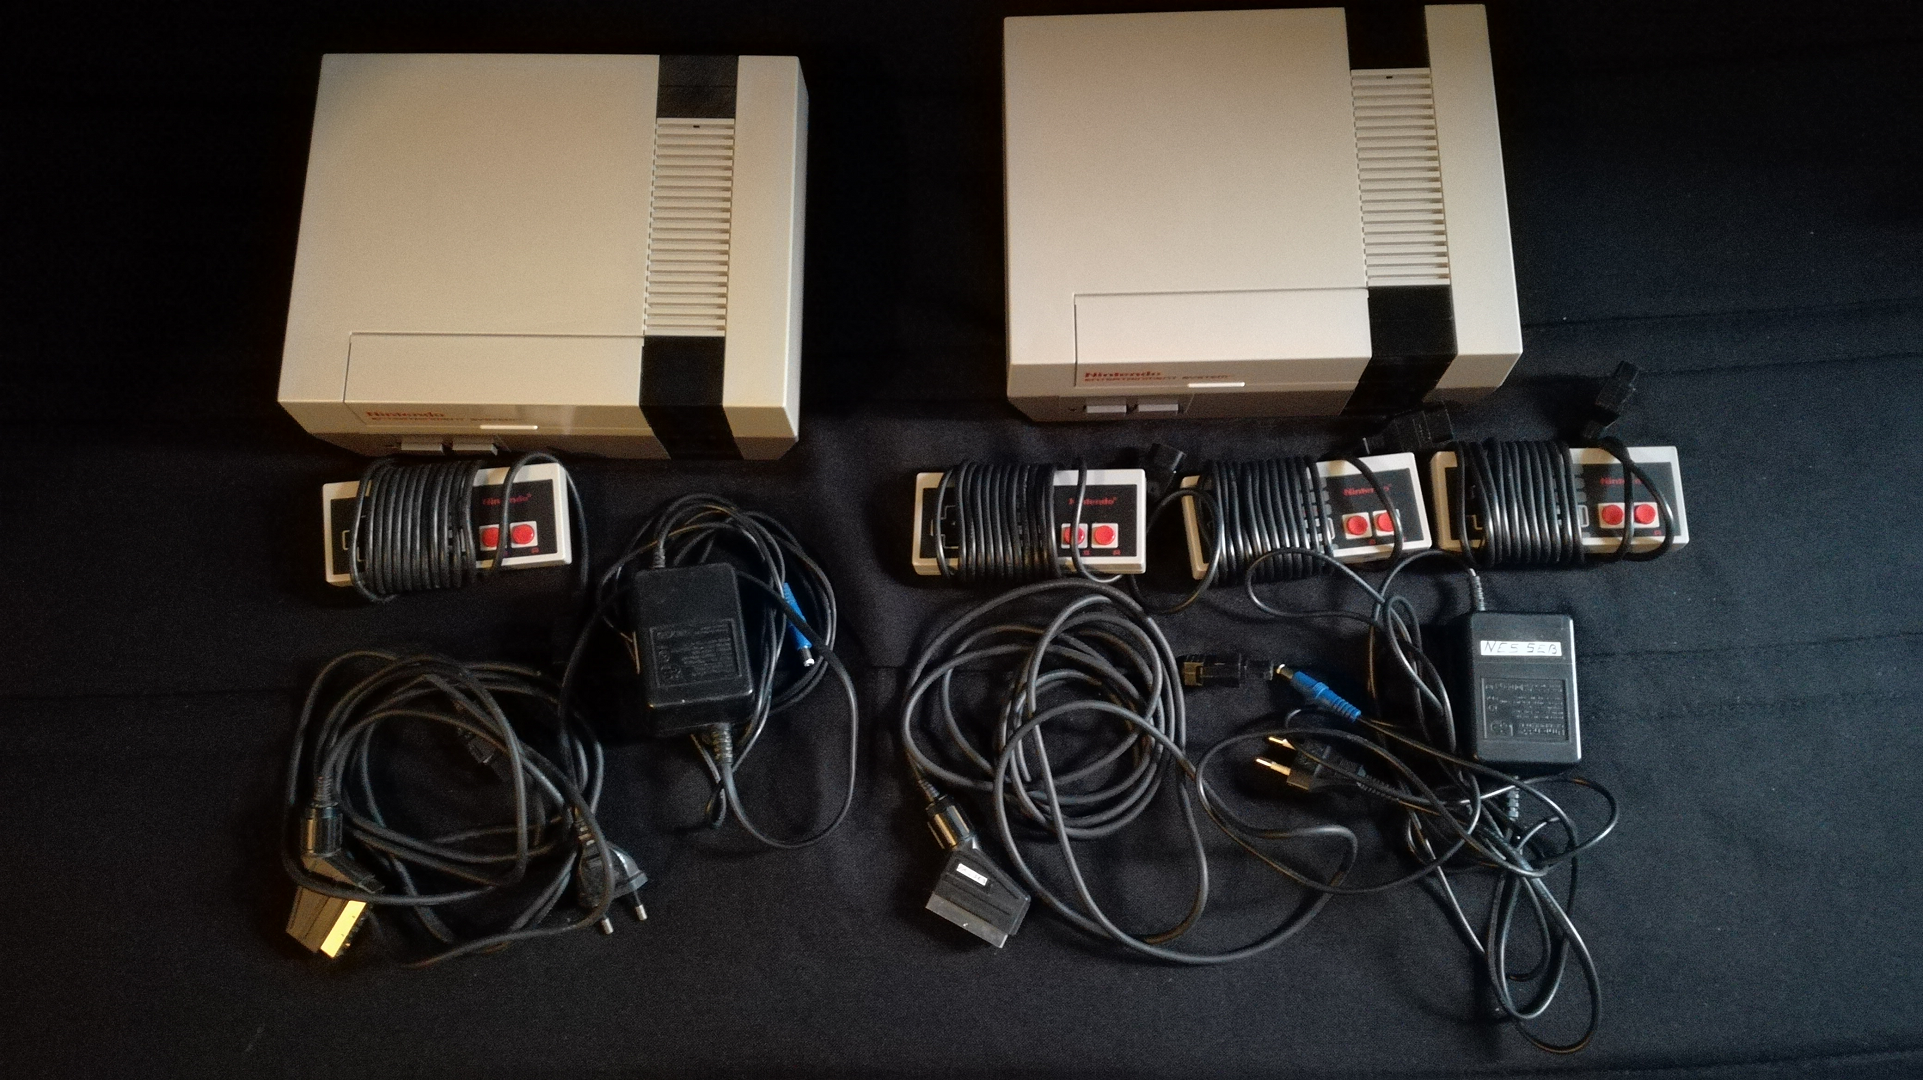 Collection de la Nintendo NES à la Nintendo Switch - La NES